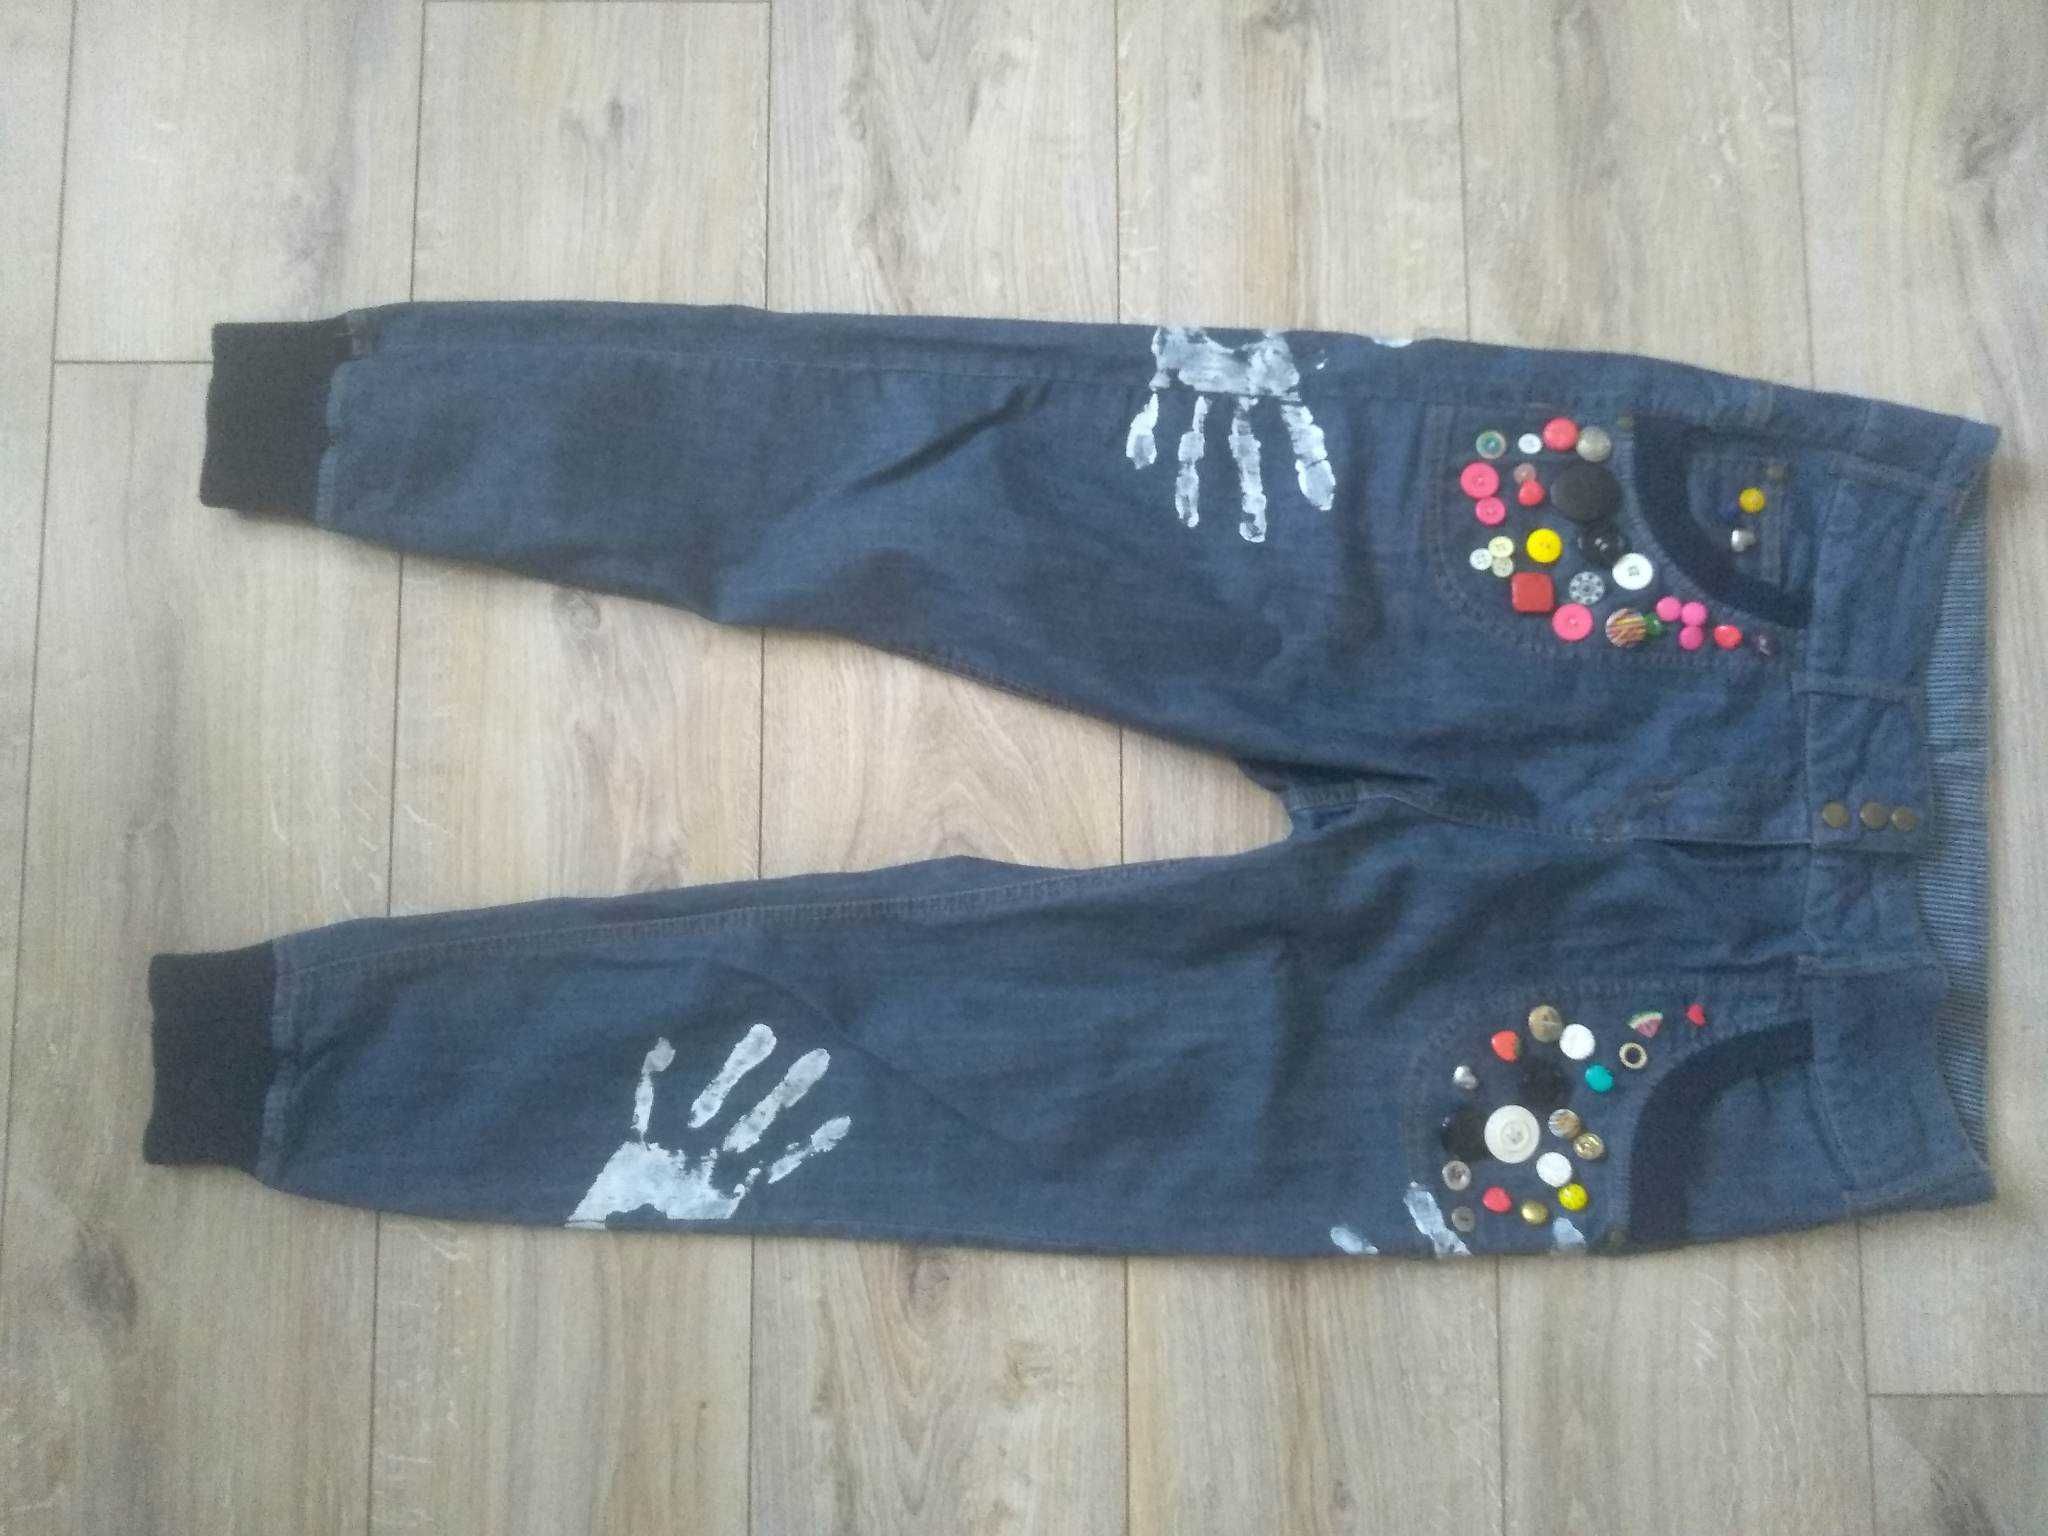 Gosha by Veromoda Mojo jeans spodnie jeansowe size 40